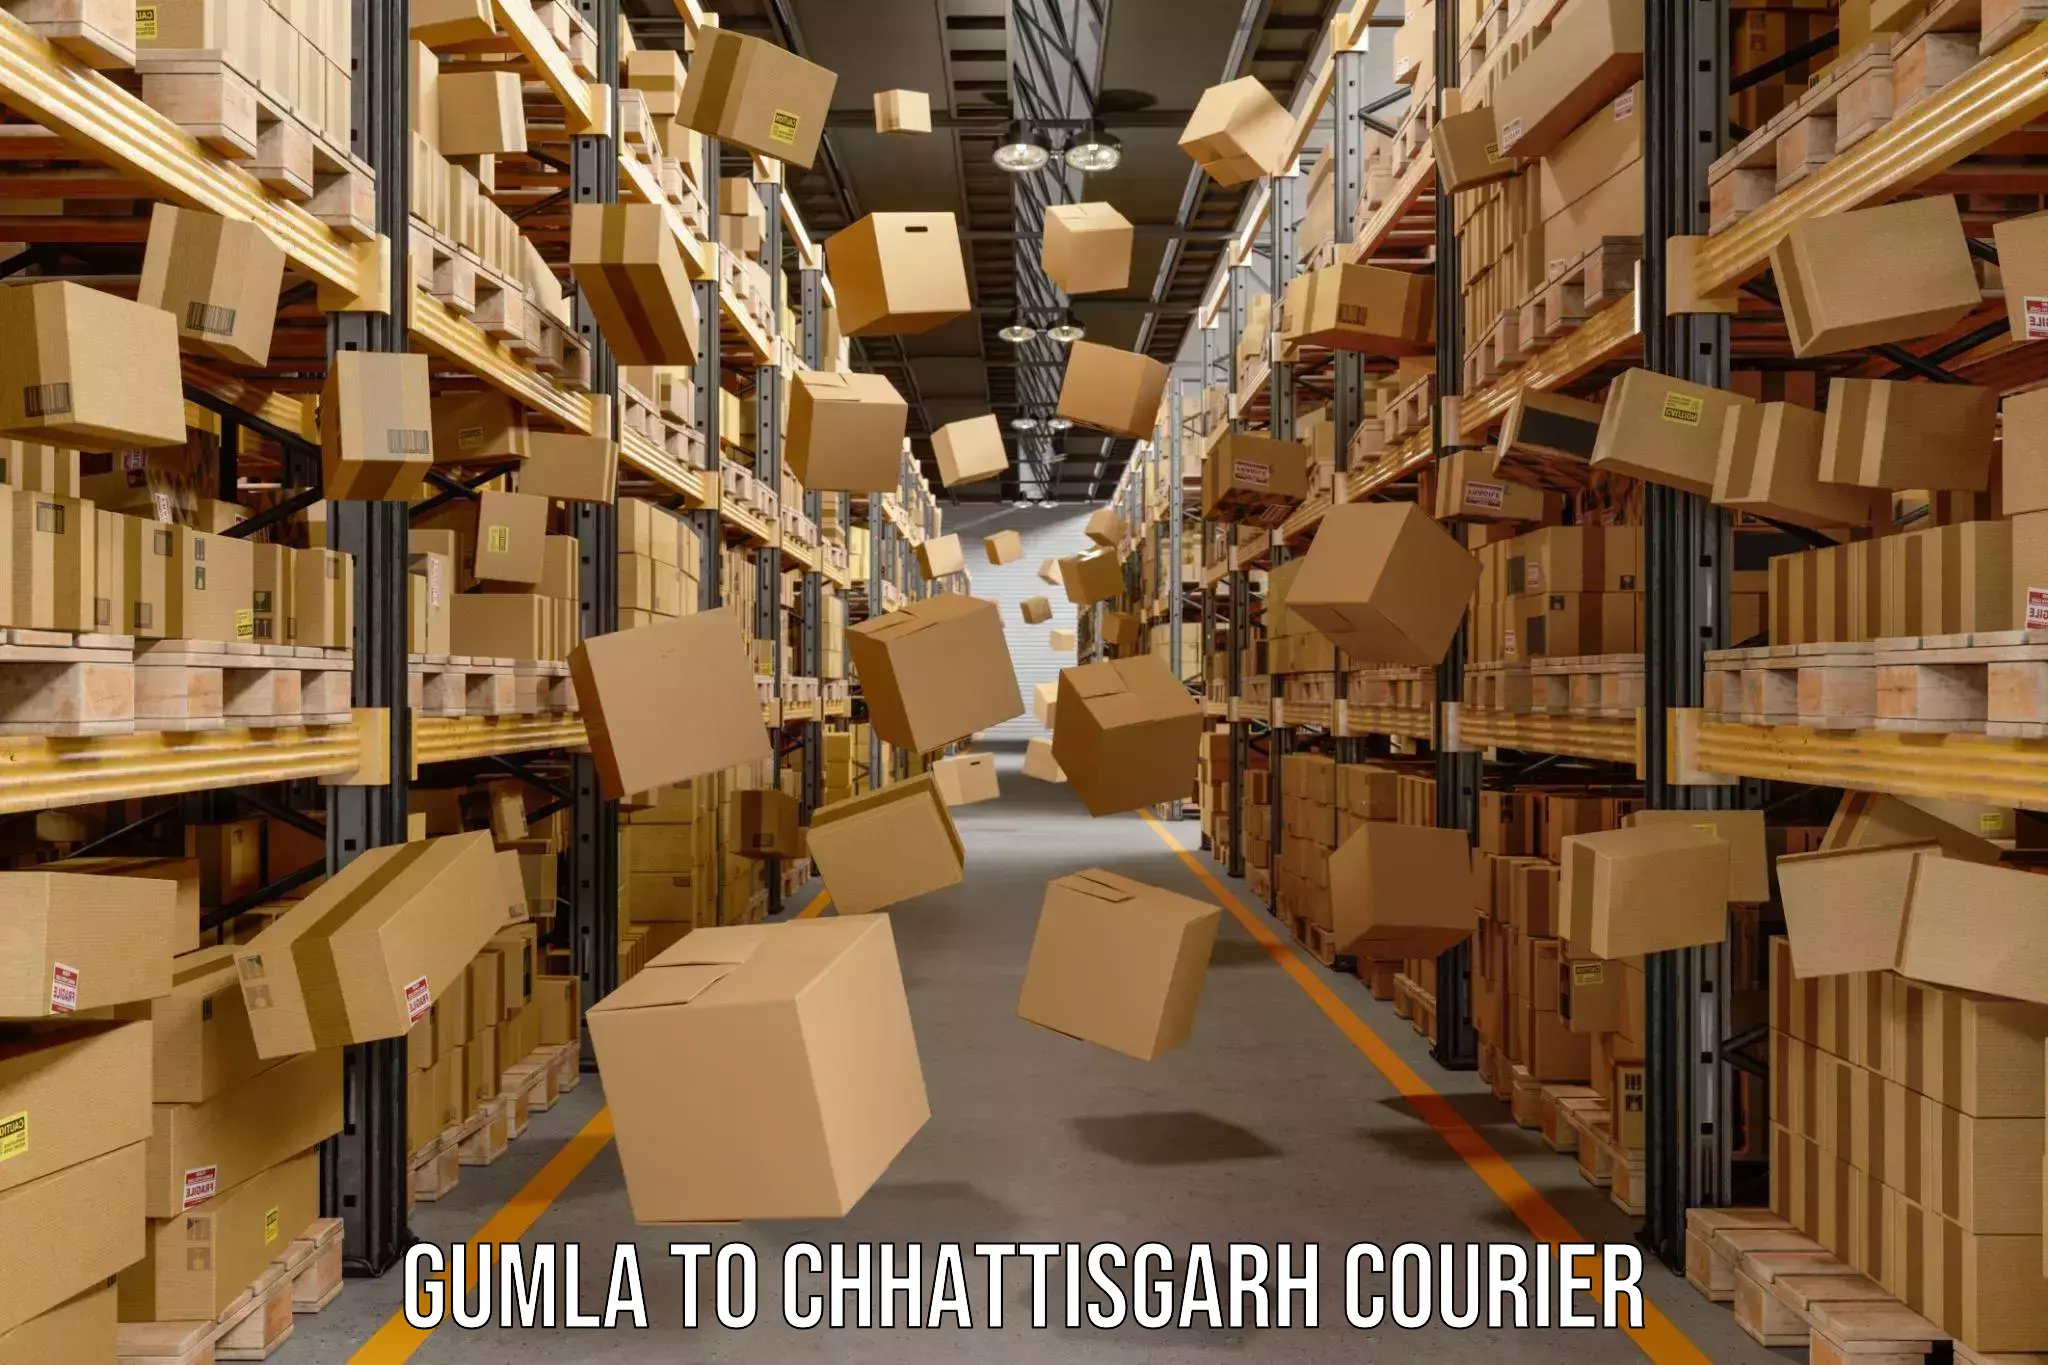 Digital courier platforms Gumla to Ambikapur